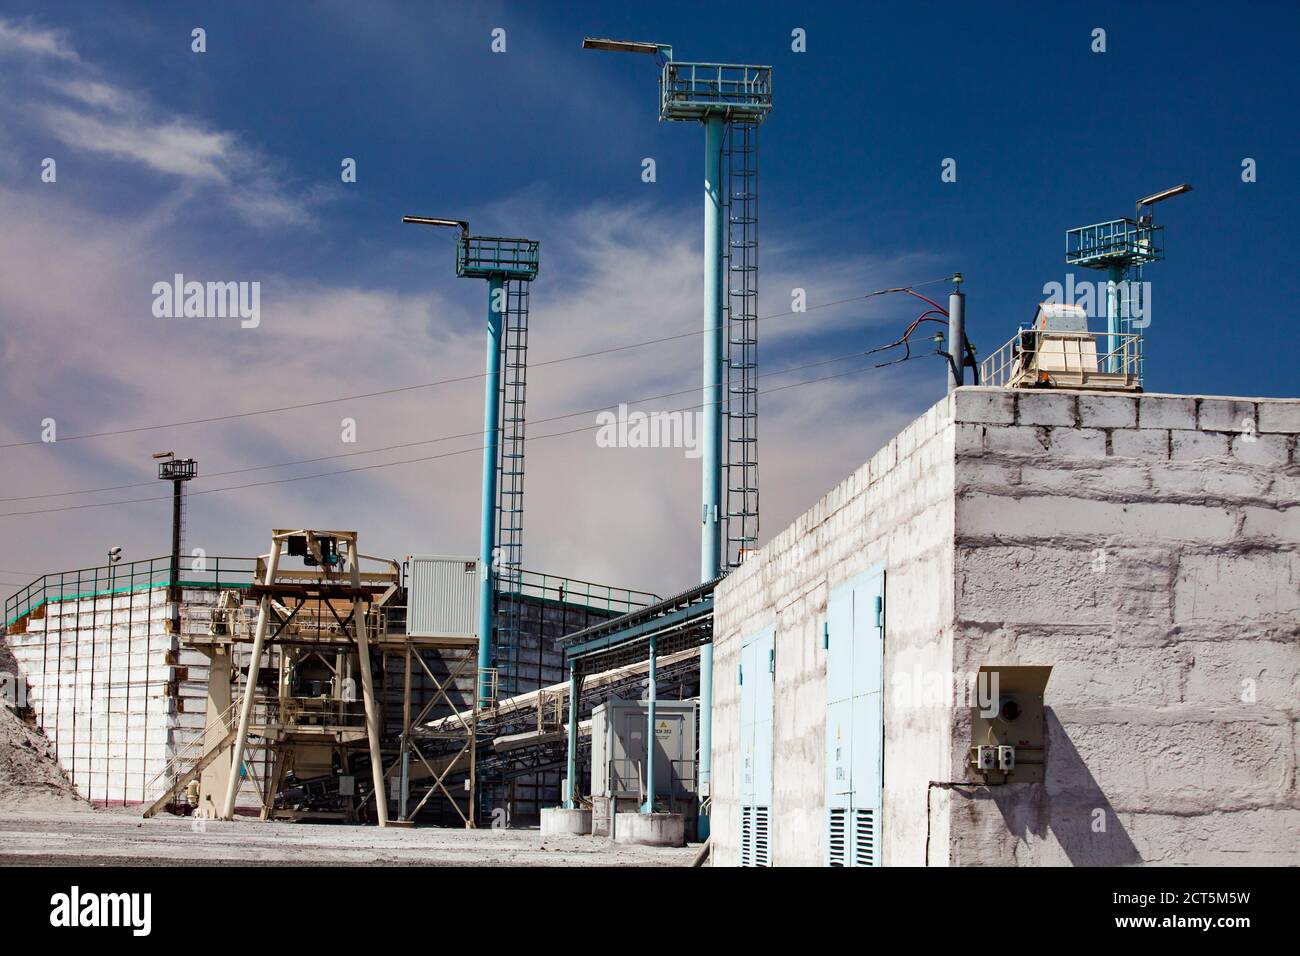 Aksu/Kasachstan - Mai 29 2012: Hüttenwerk Aksu. Moderne Schlacke Bearbeitungsmaschine. Blauer Himmel und Wolken.V Stockfoto